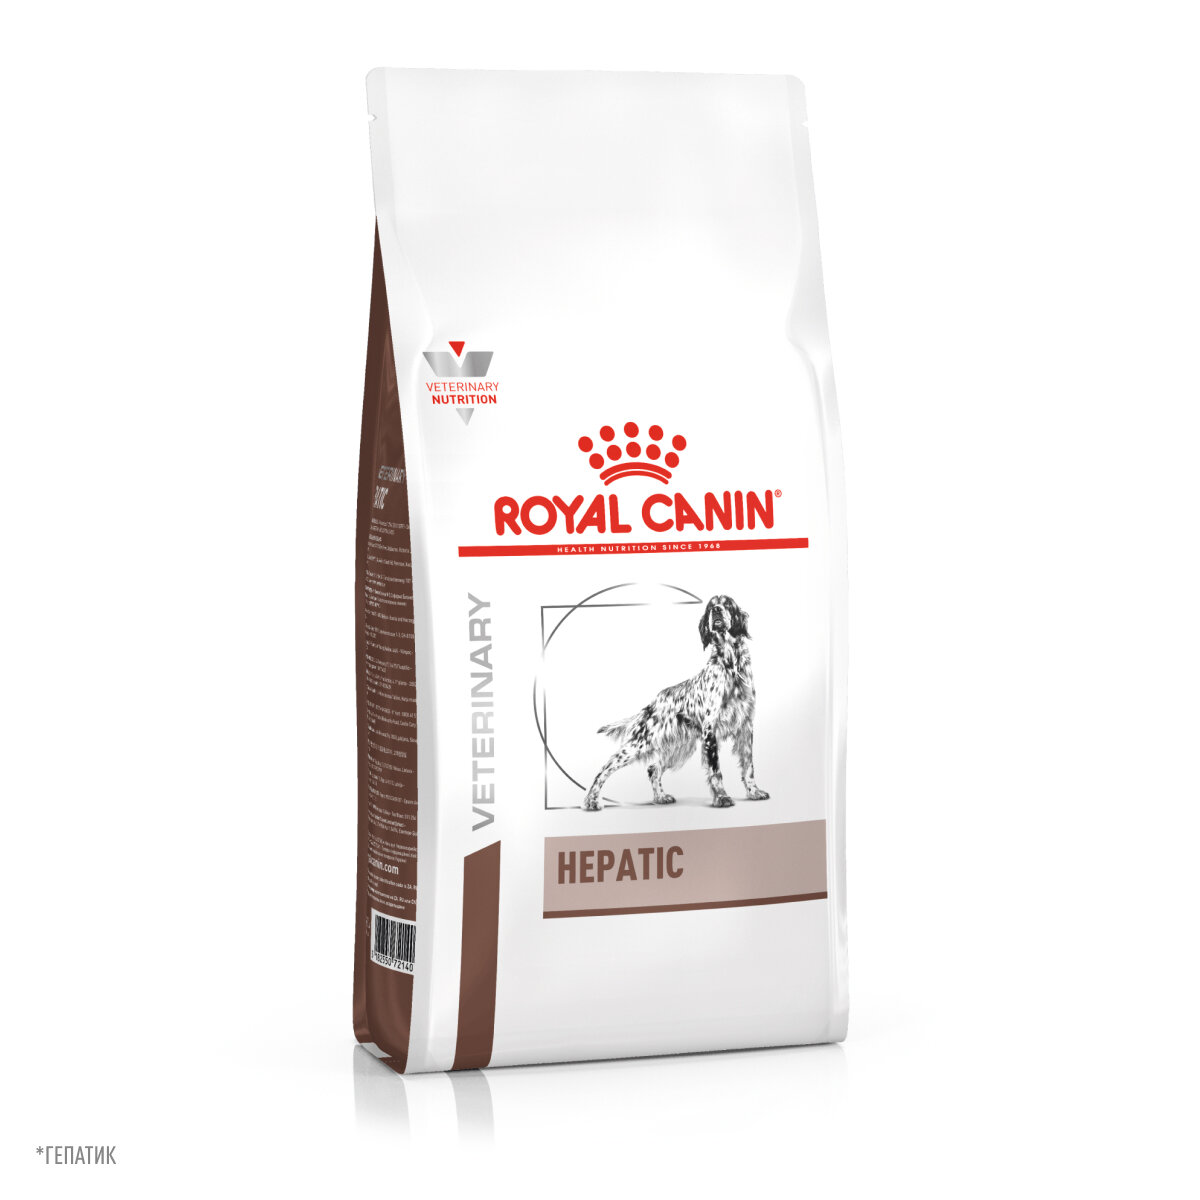 Royal Canin (вет.корма) RC Для собак при заболеваниях печени (Hepatic HF16) 39271200R139271200R0 | Hepatic 12 кг 11784